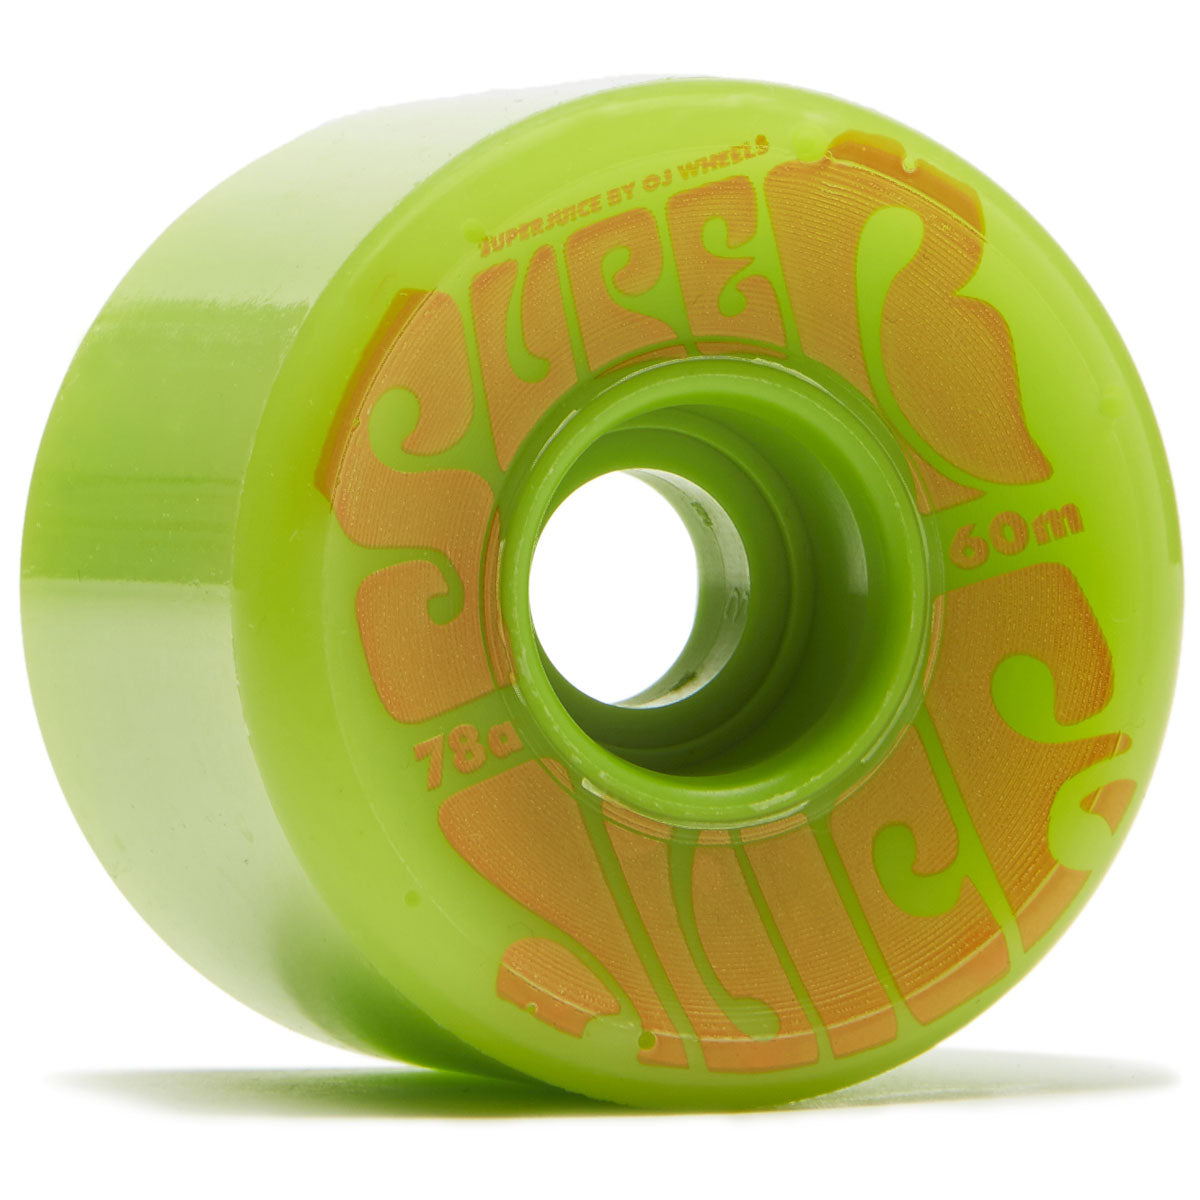 OJ Super Juice 78a Skateboard Wheels - Green - 60mm image 1